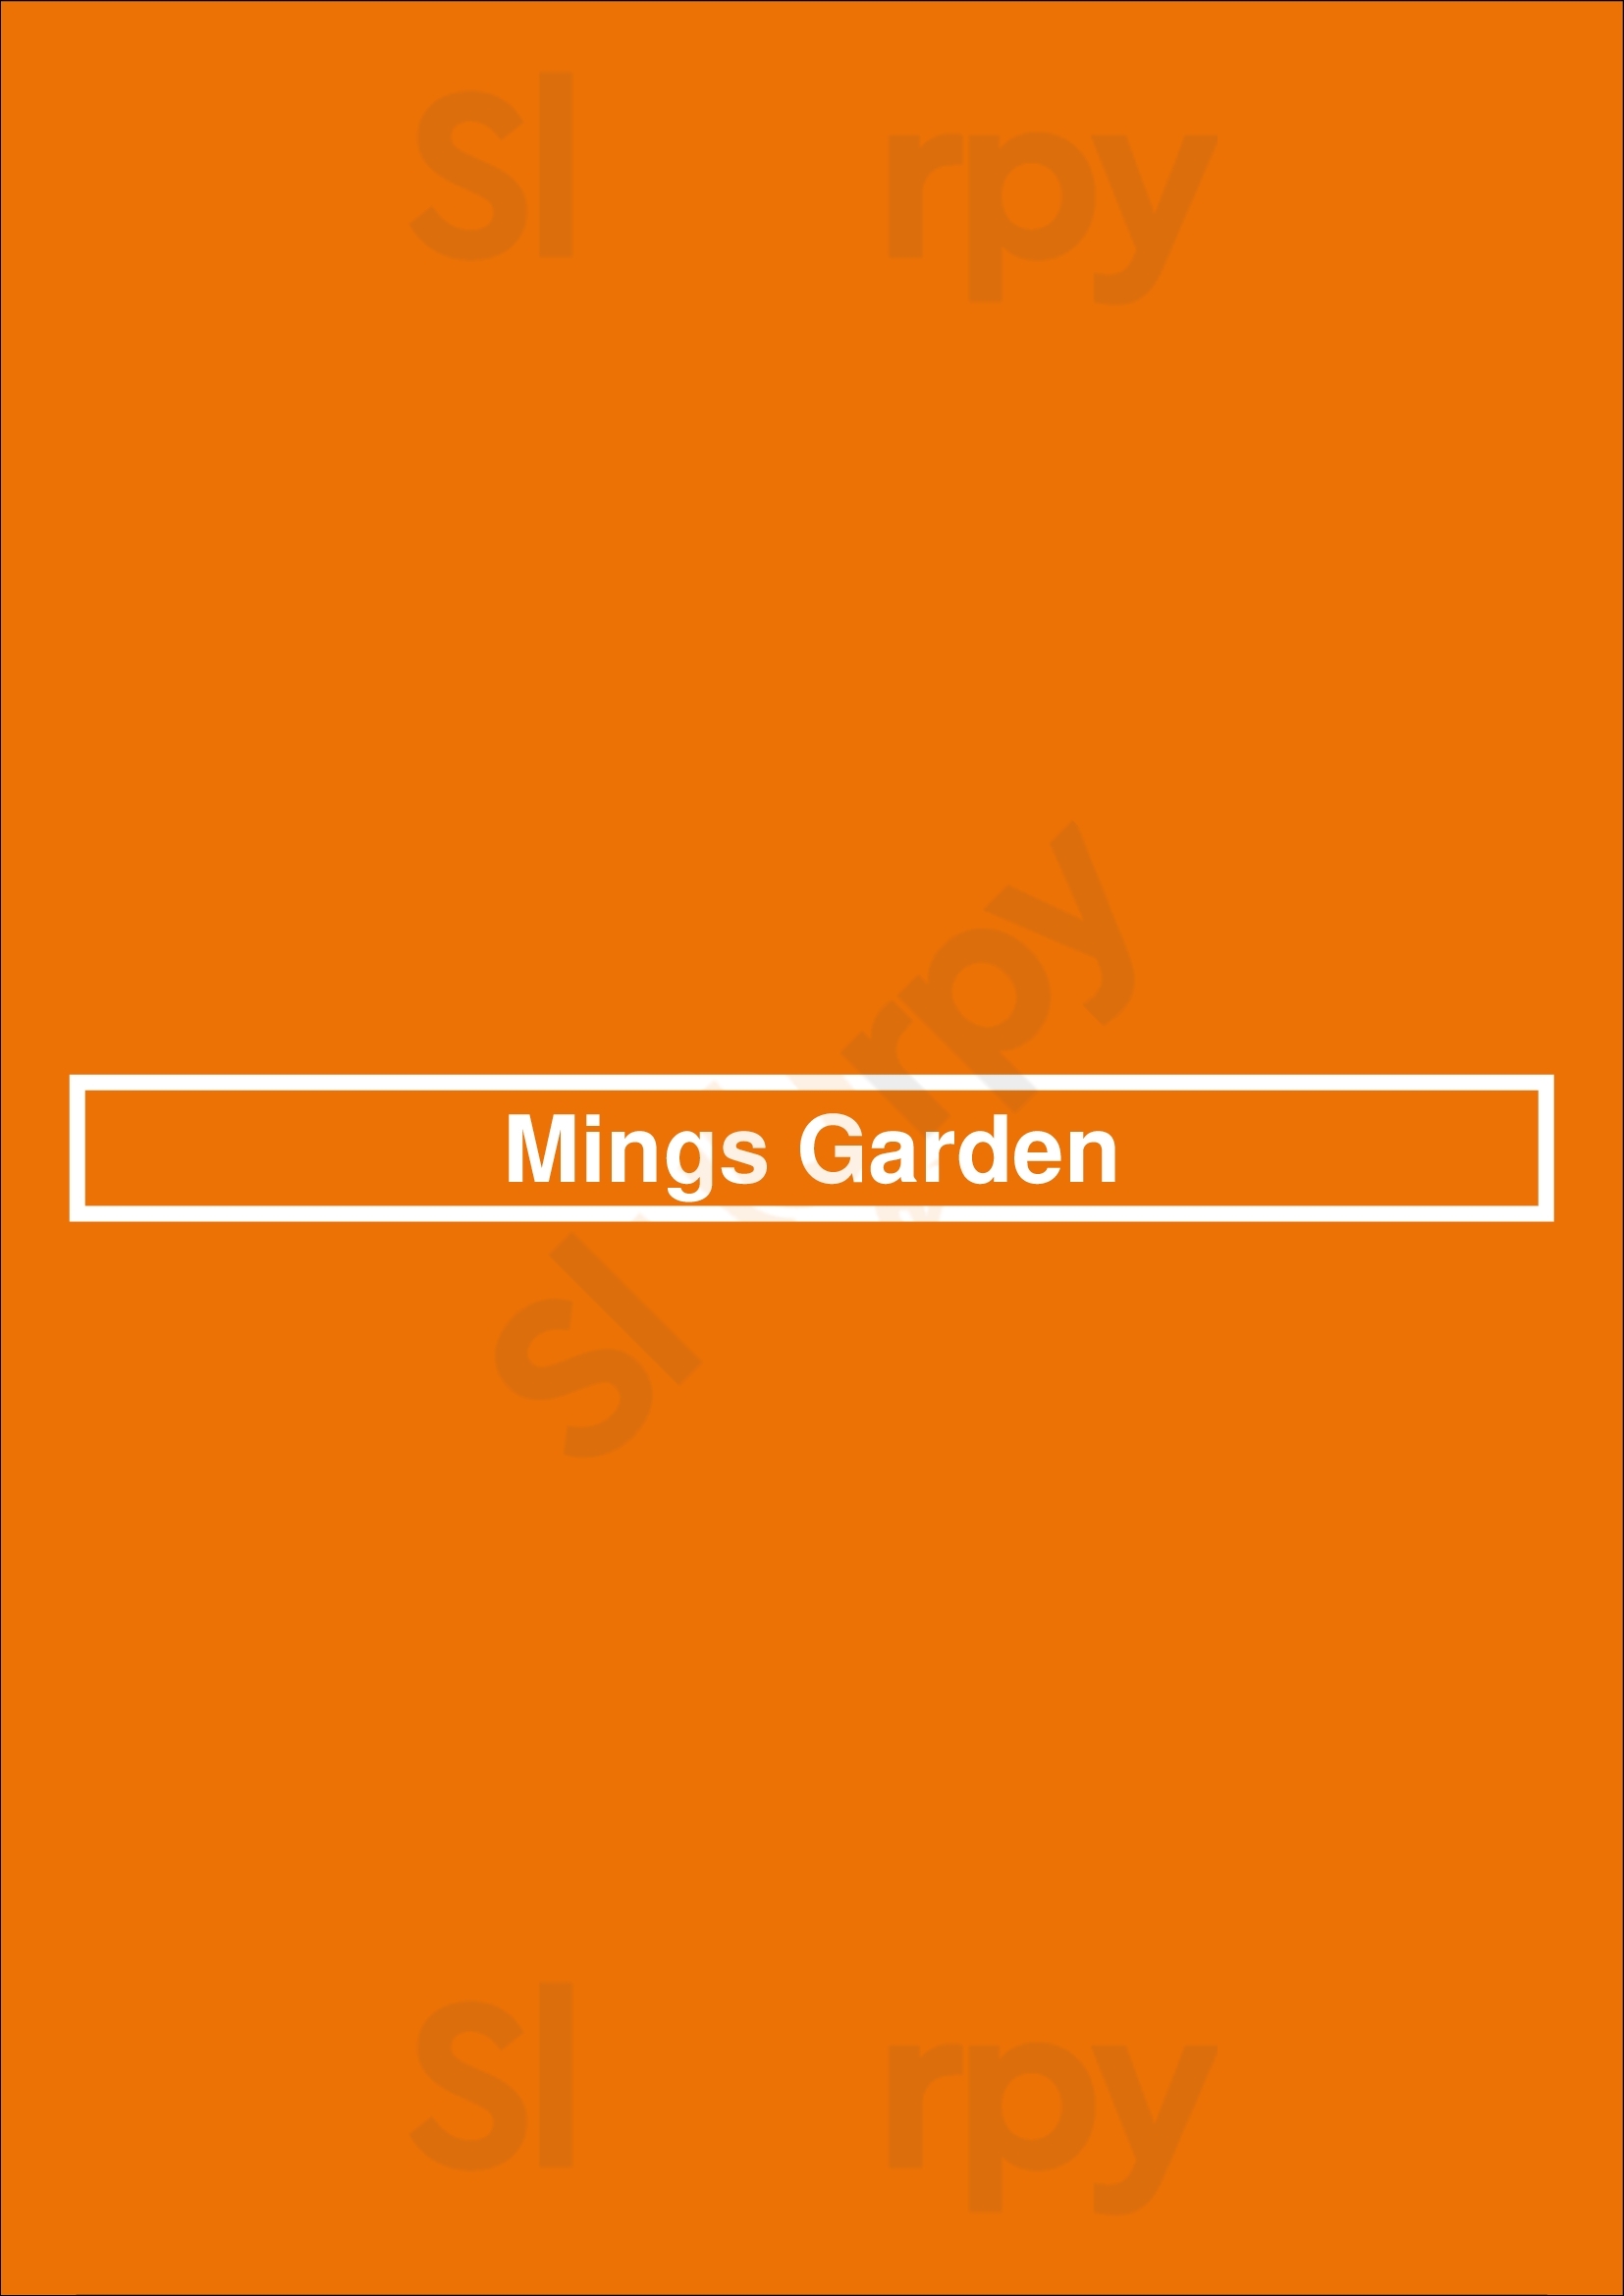 Mings Garden North Vancouver Menu - 1